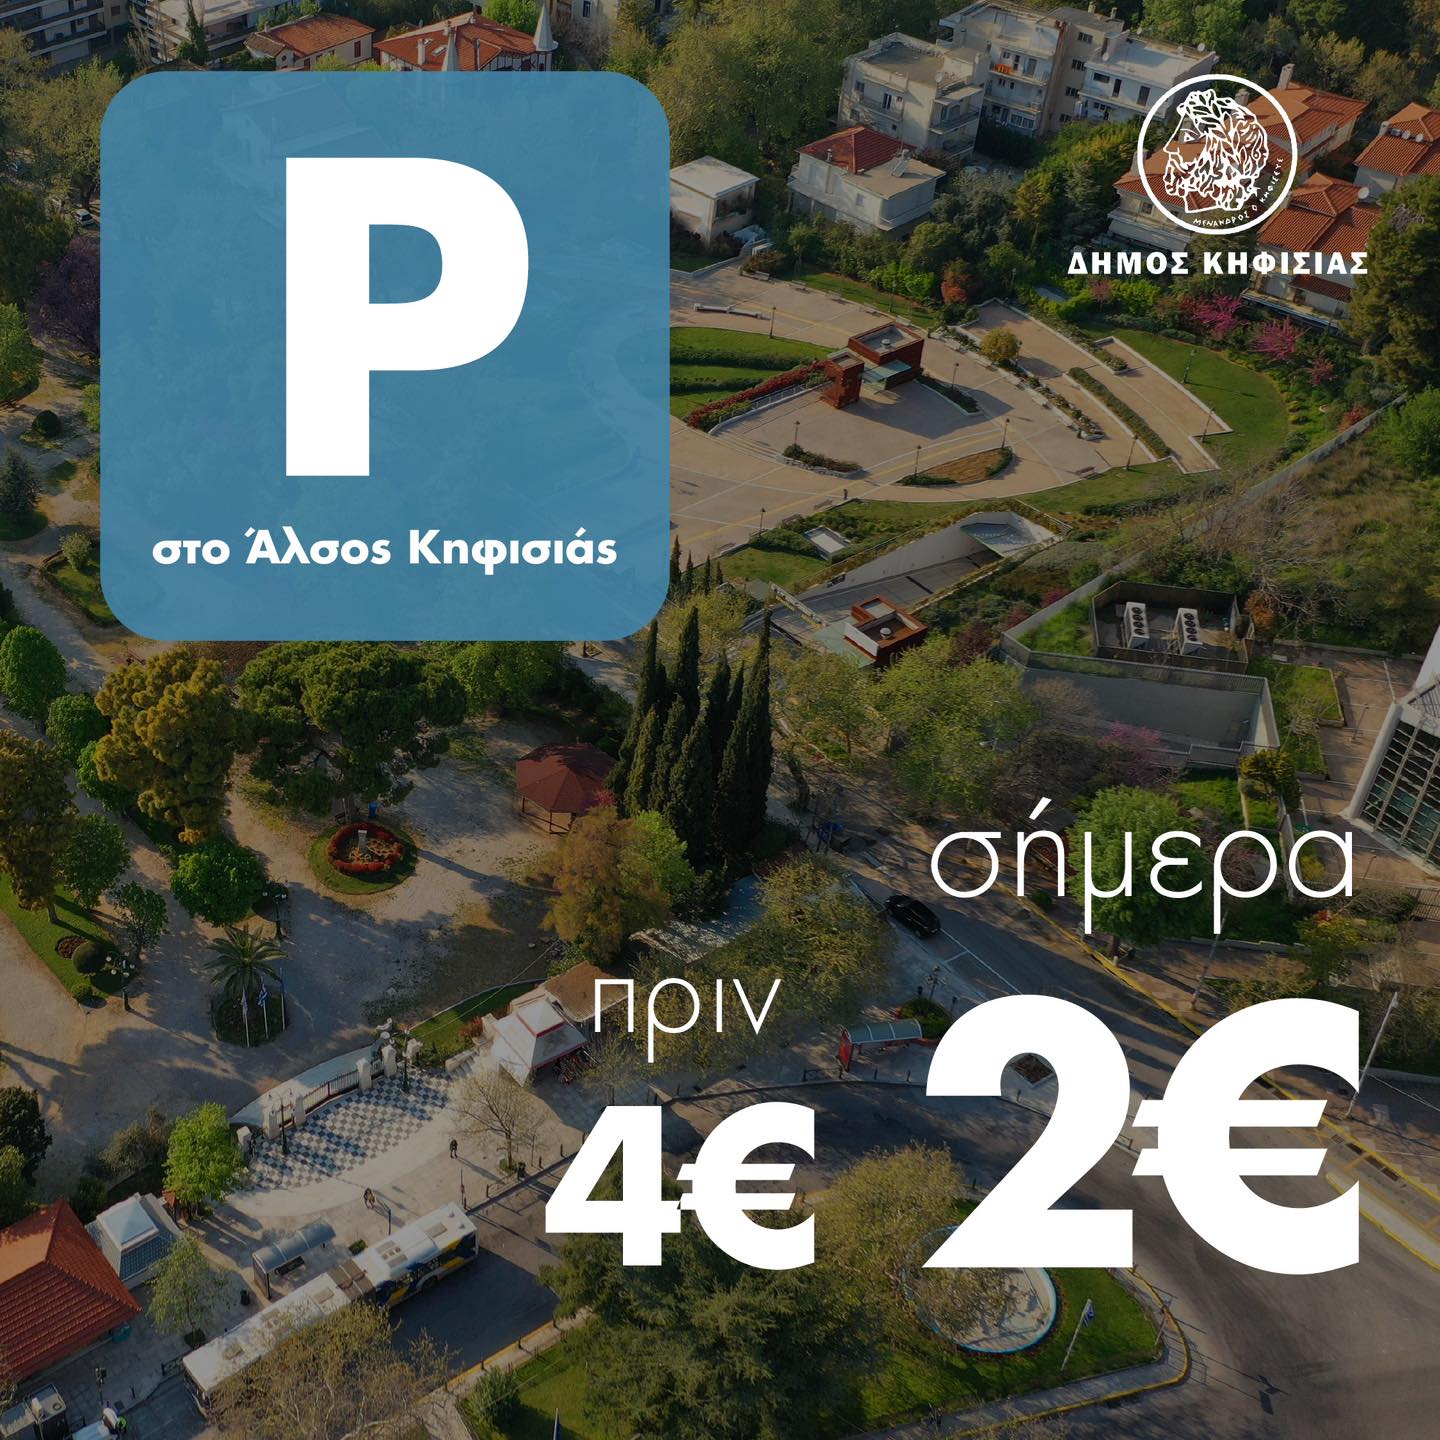 Μείωση της τιμής στάθμευσης στο Άλσος Κηφισιάς στα 2 ευρώ